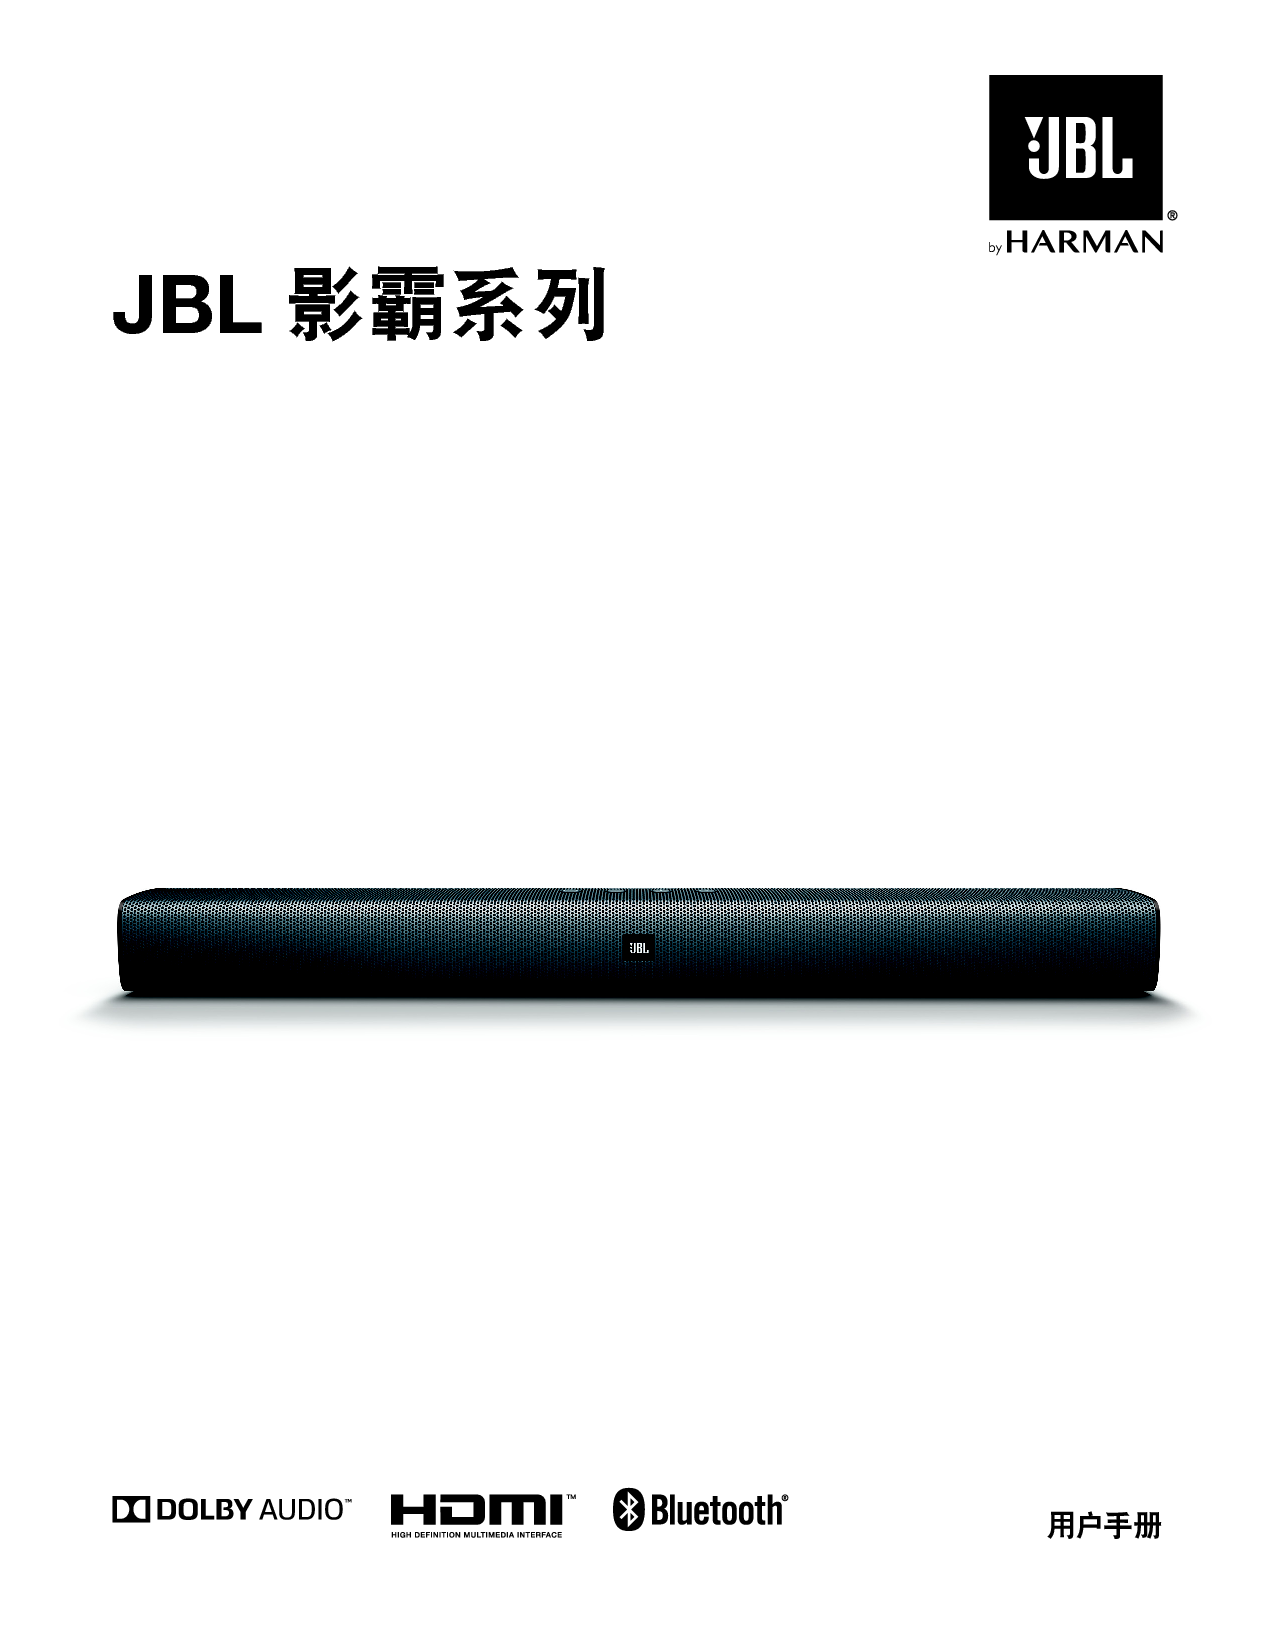 JBL BAR STUDIO 影霸 用户手册 封面